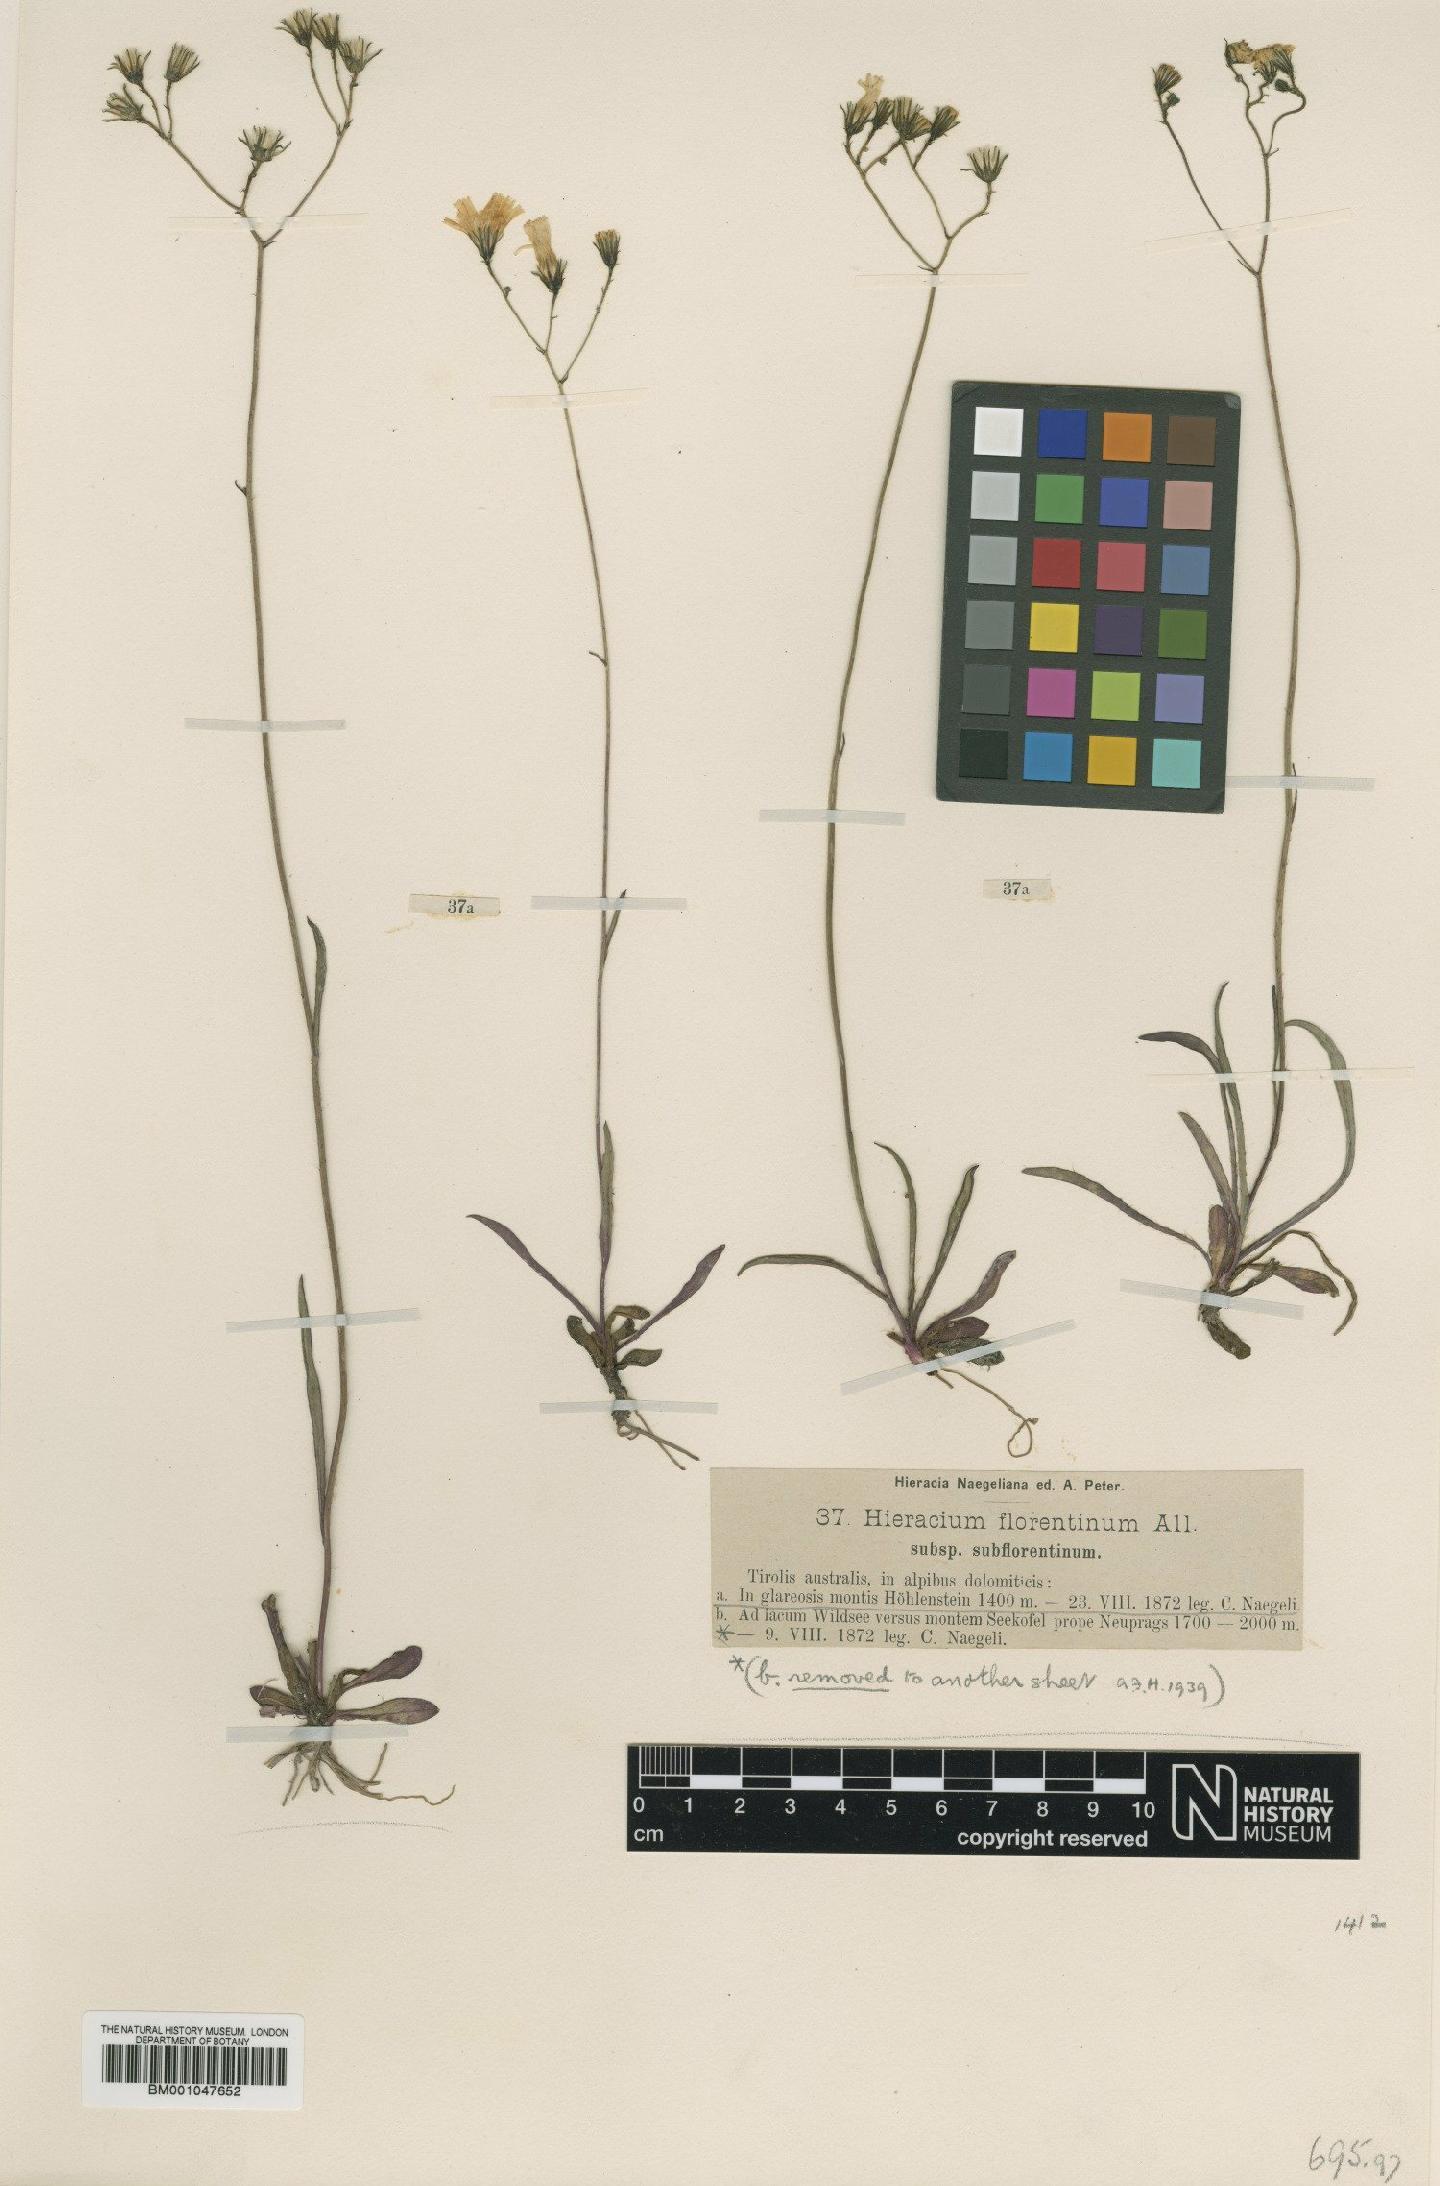 To NHMUK collection (Hieracium florentinum subsp. subflorentinum Nägeli & Peter; NHMUK:ecatalogue:2803838)